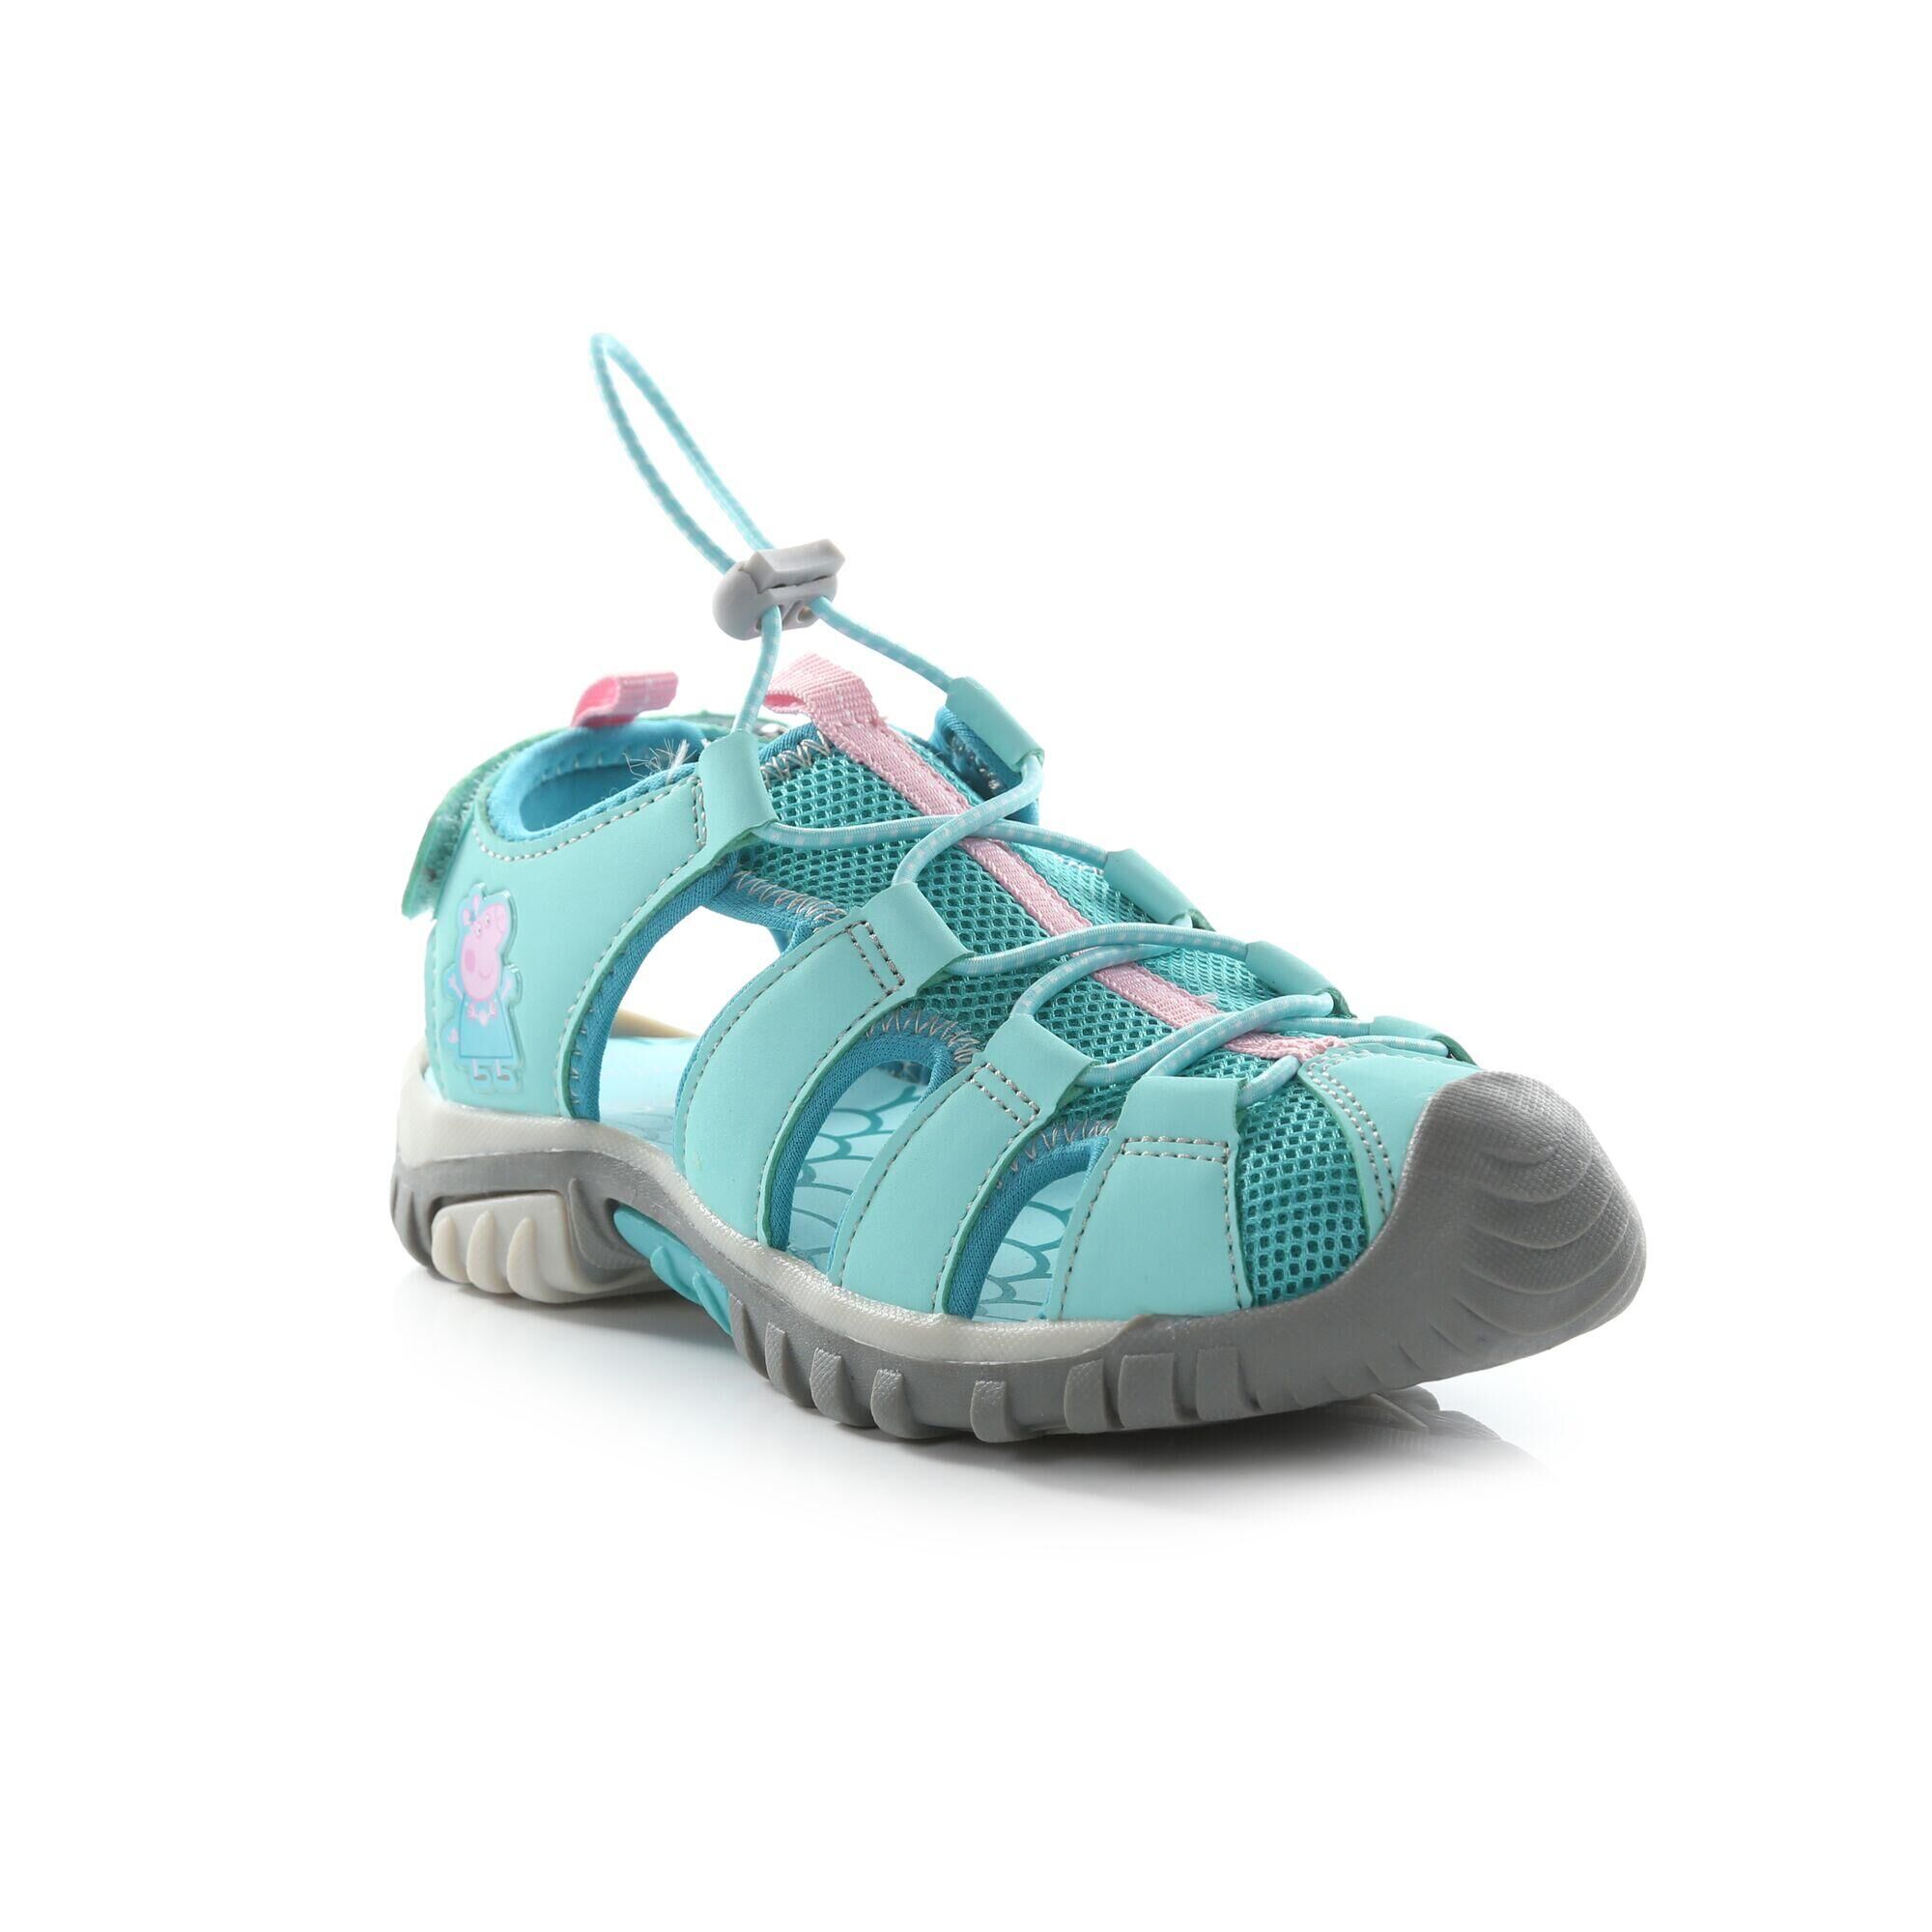 REGATTA Peppa Pig Kids Walking Sandals - Aruba Blue